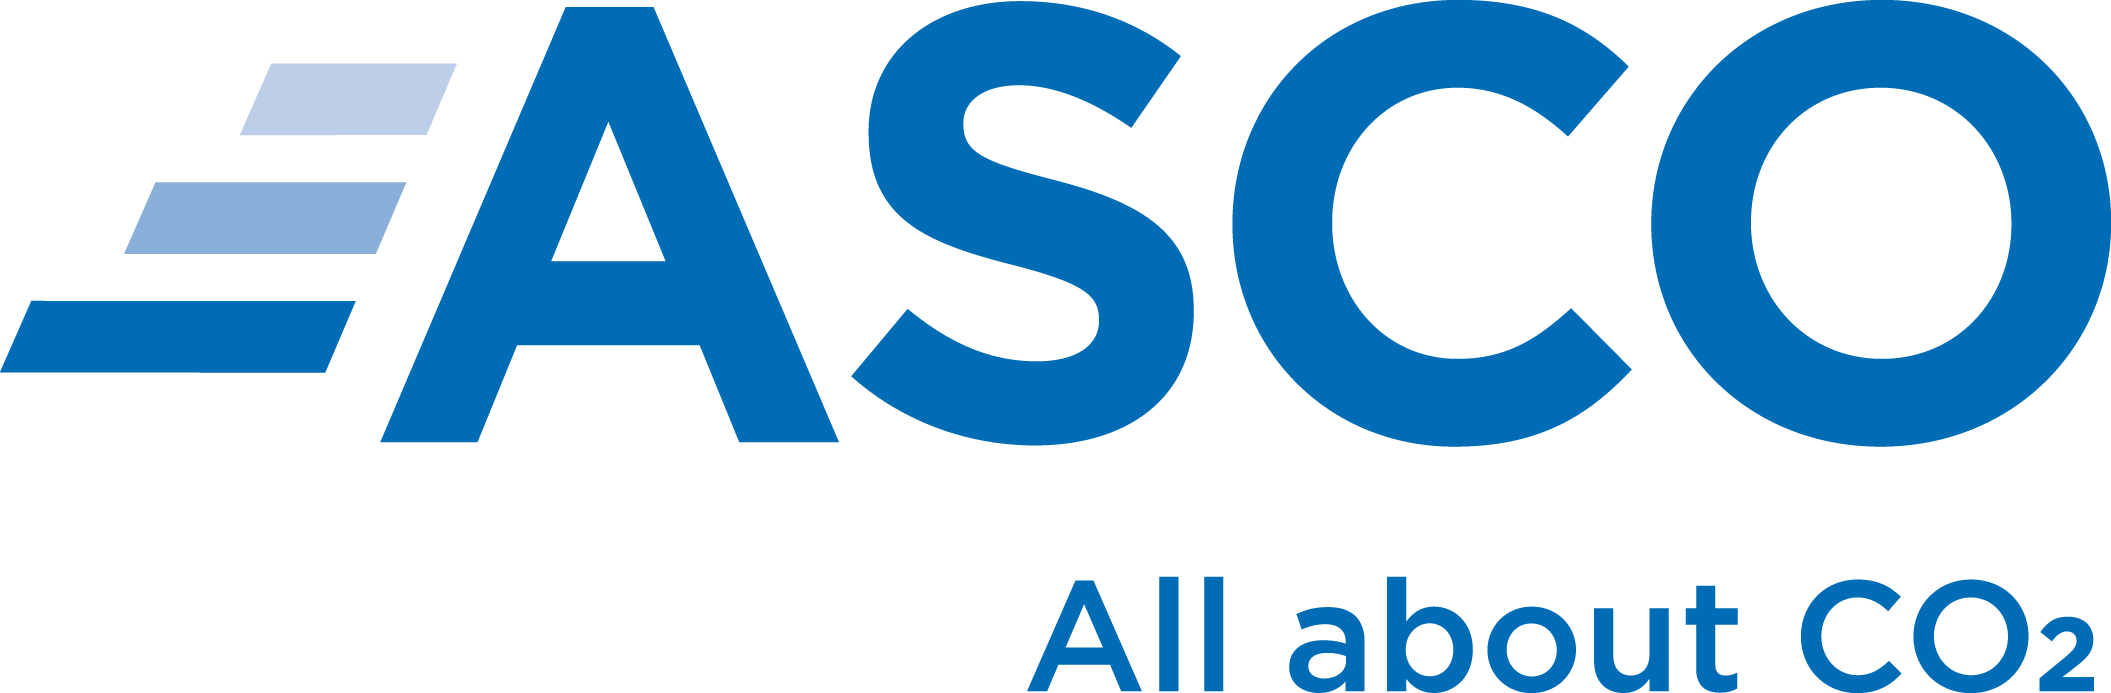 ASCO Carbon Dioxide Ltd_logo